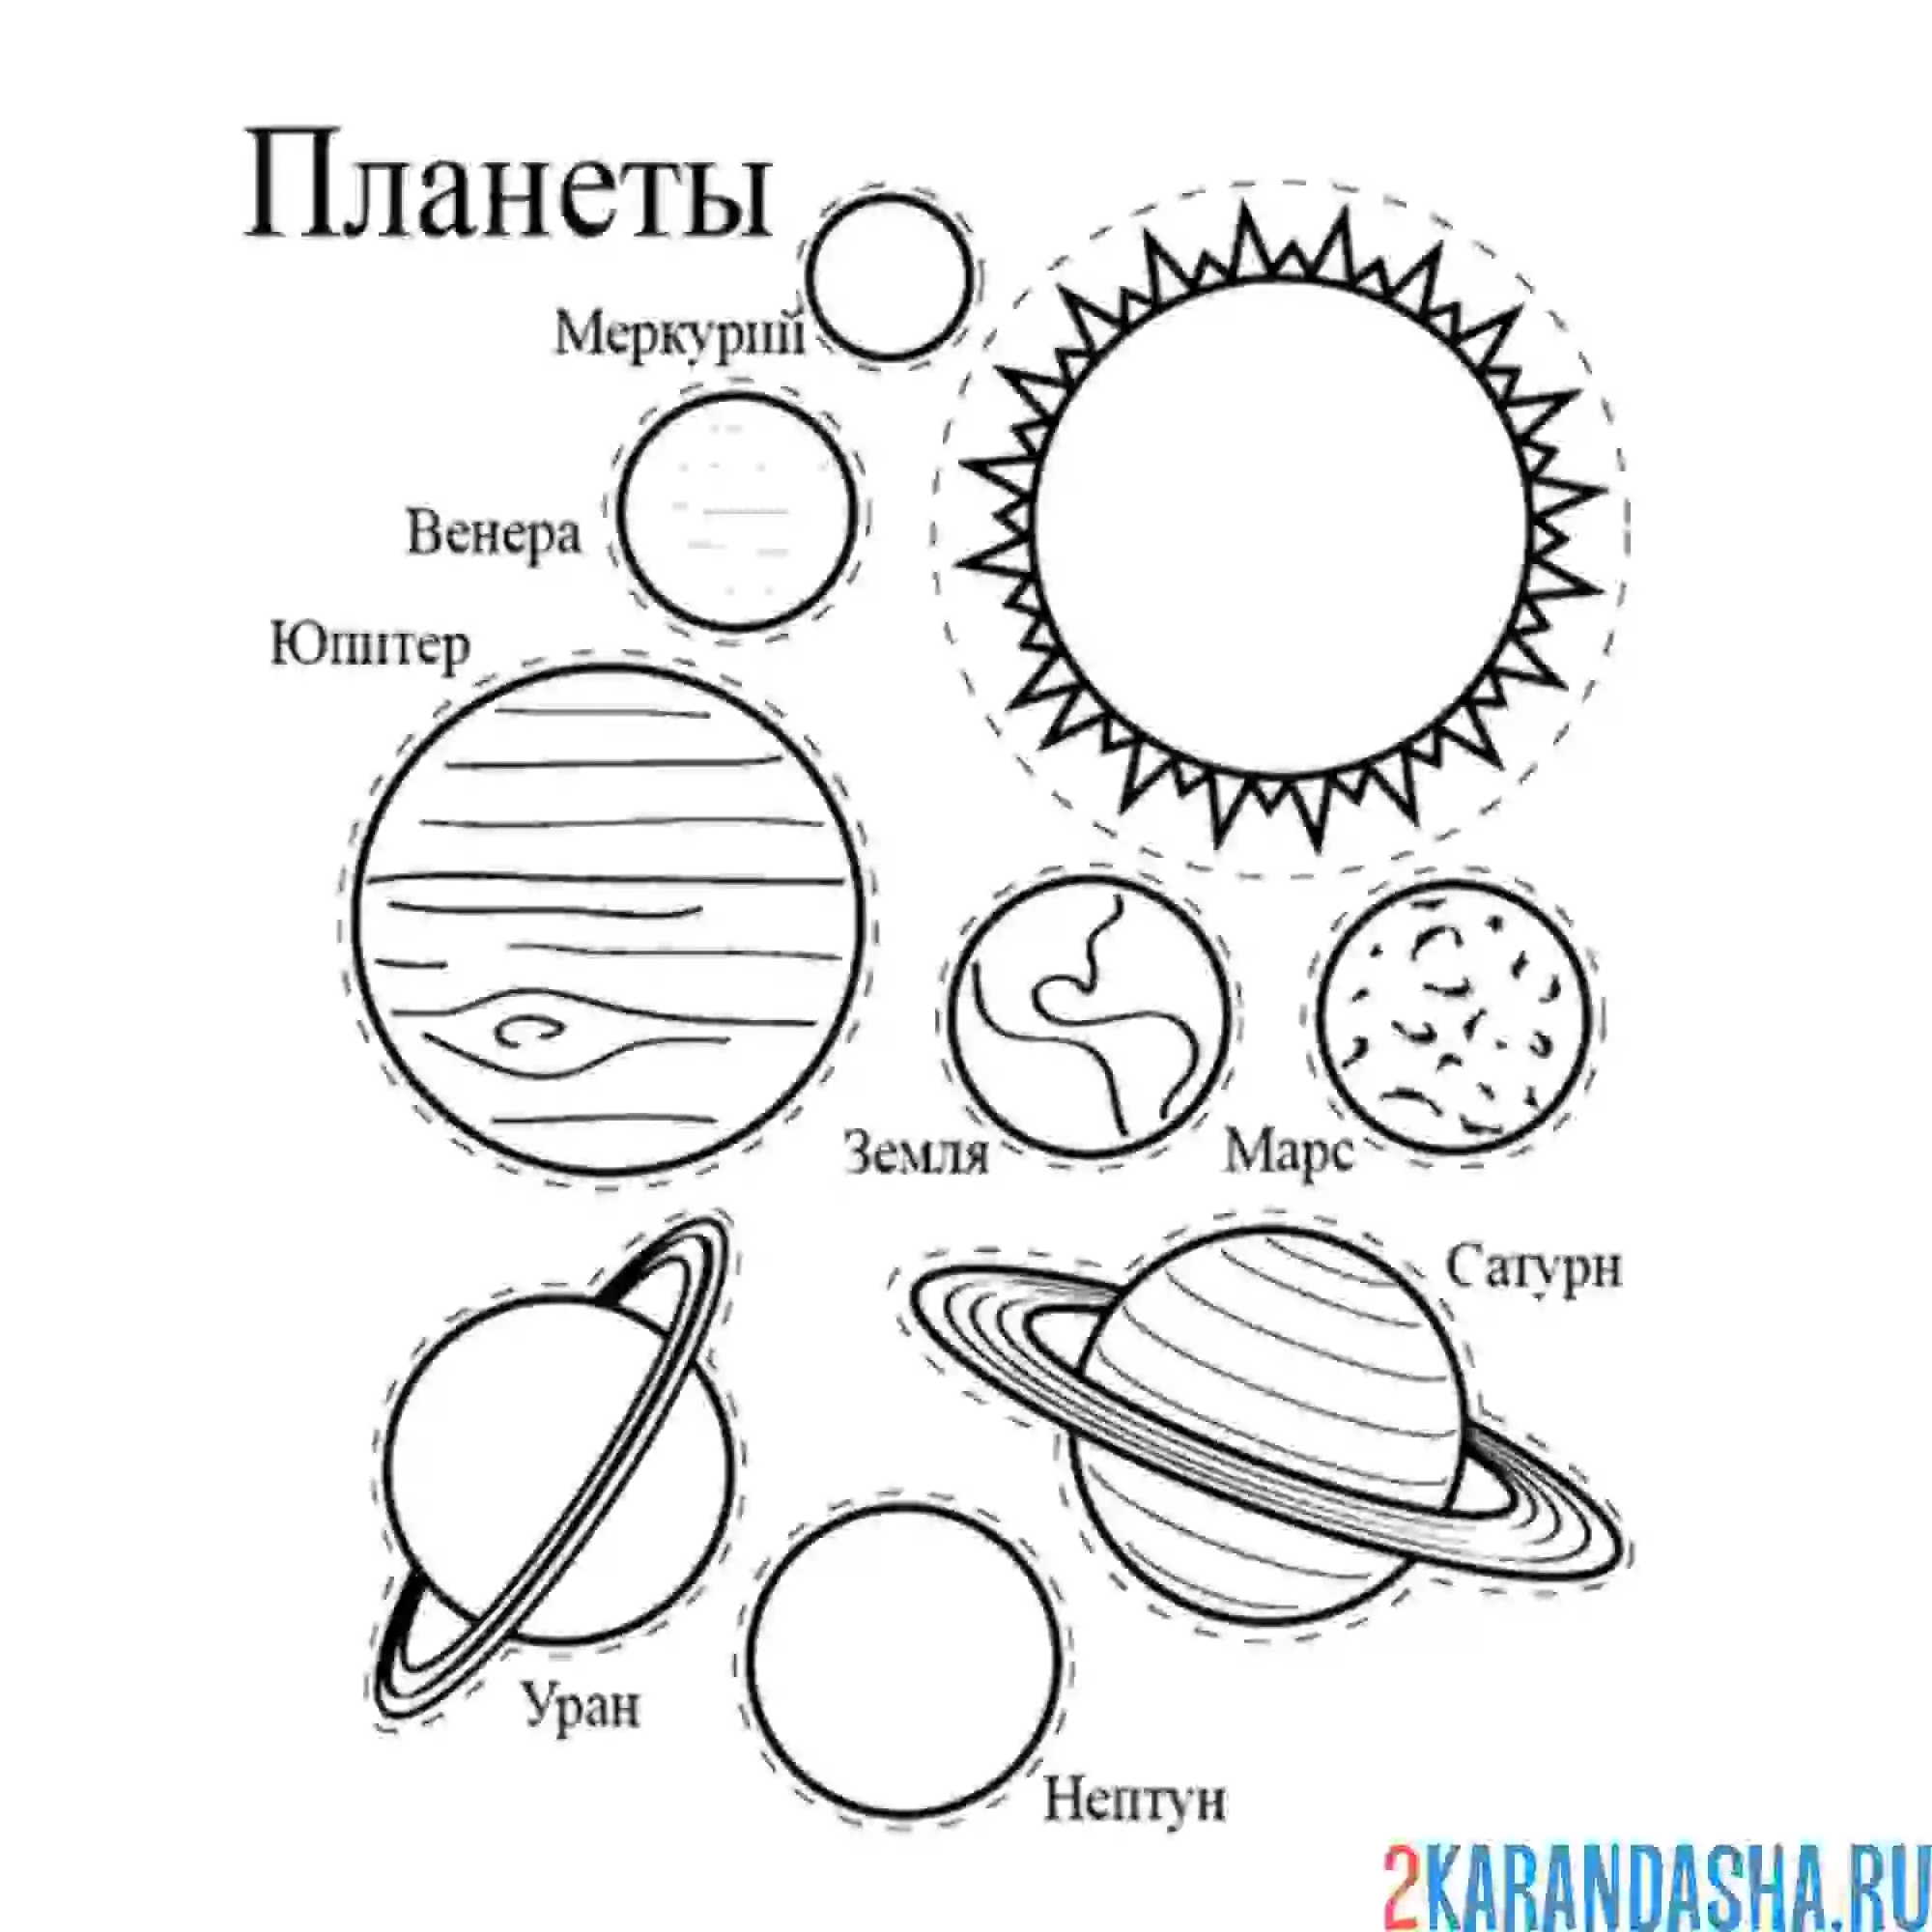 Раскраска планеты для детей 5 6 лет. Разукрашка планеты солнечной системы. Раскраска планеты солнечной системы для детей. Раскраски планеты солнечной системы для детей Меркурий. Раскраска планет солнечной системы для детей с названиями.